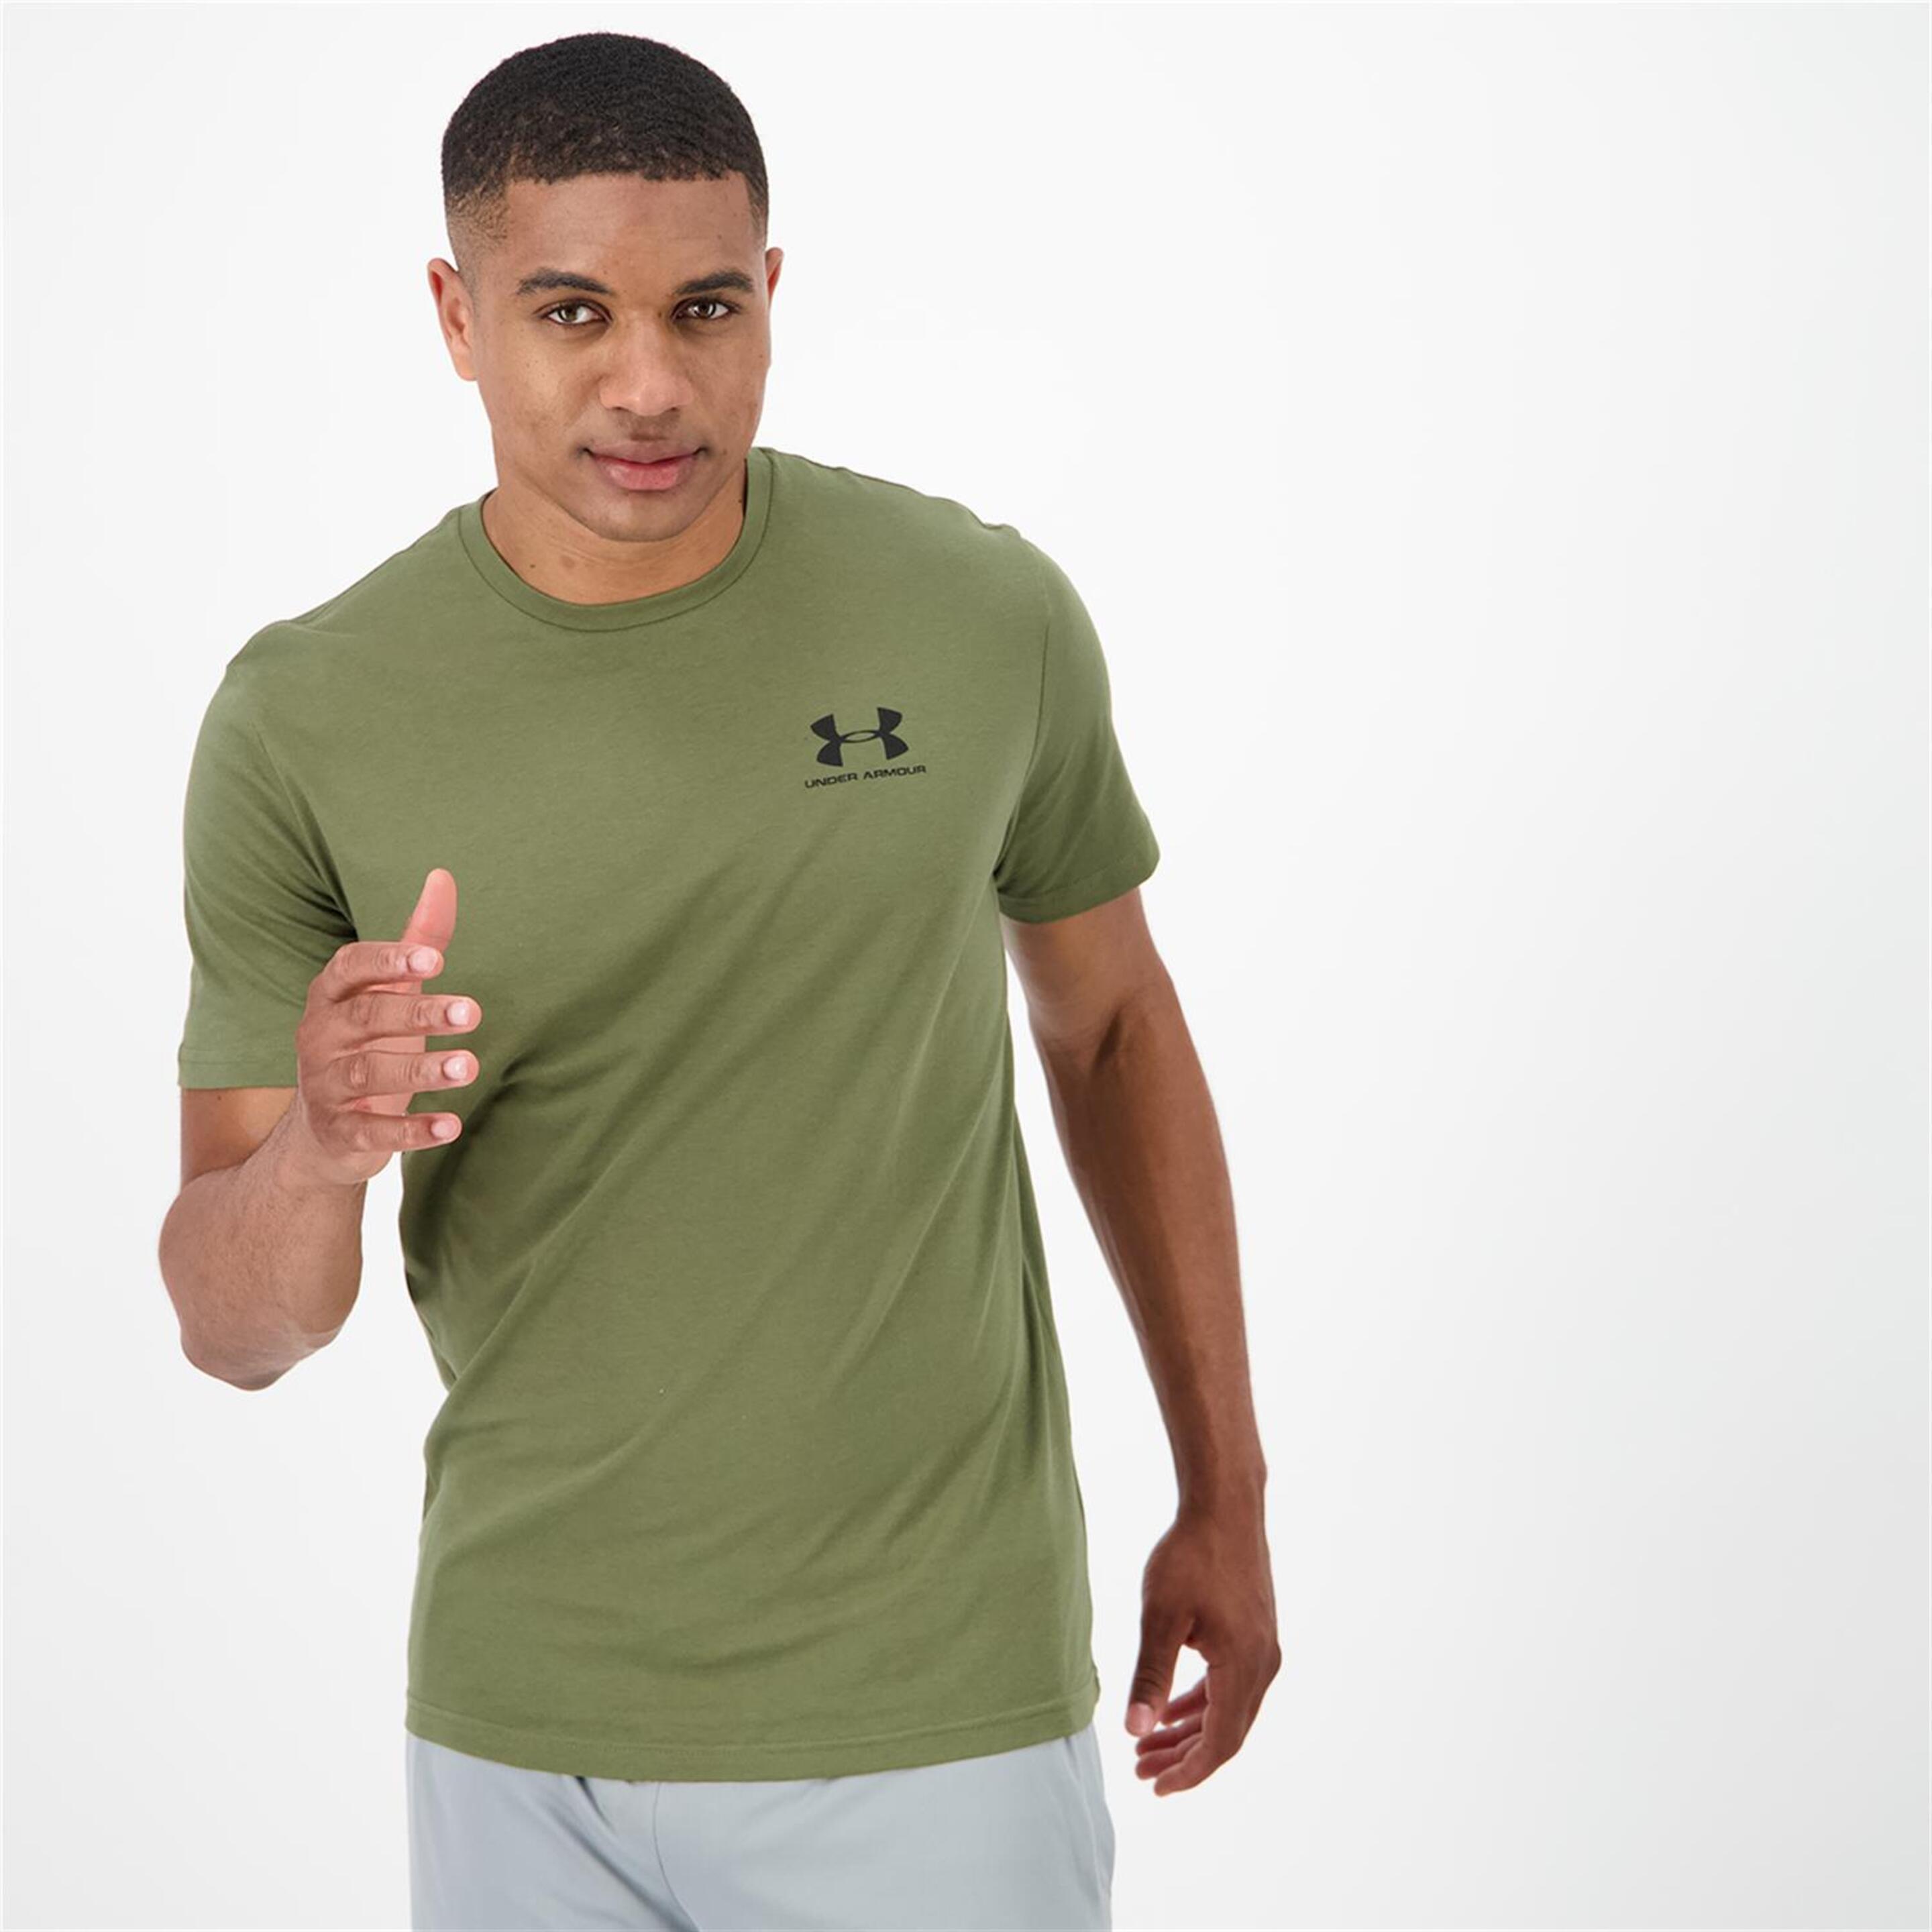 T-shirt Under Armour - verde - T-shirt Homem